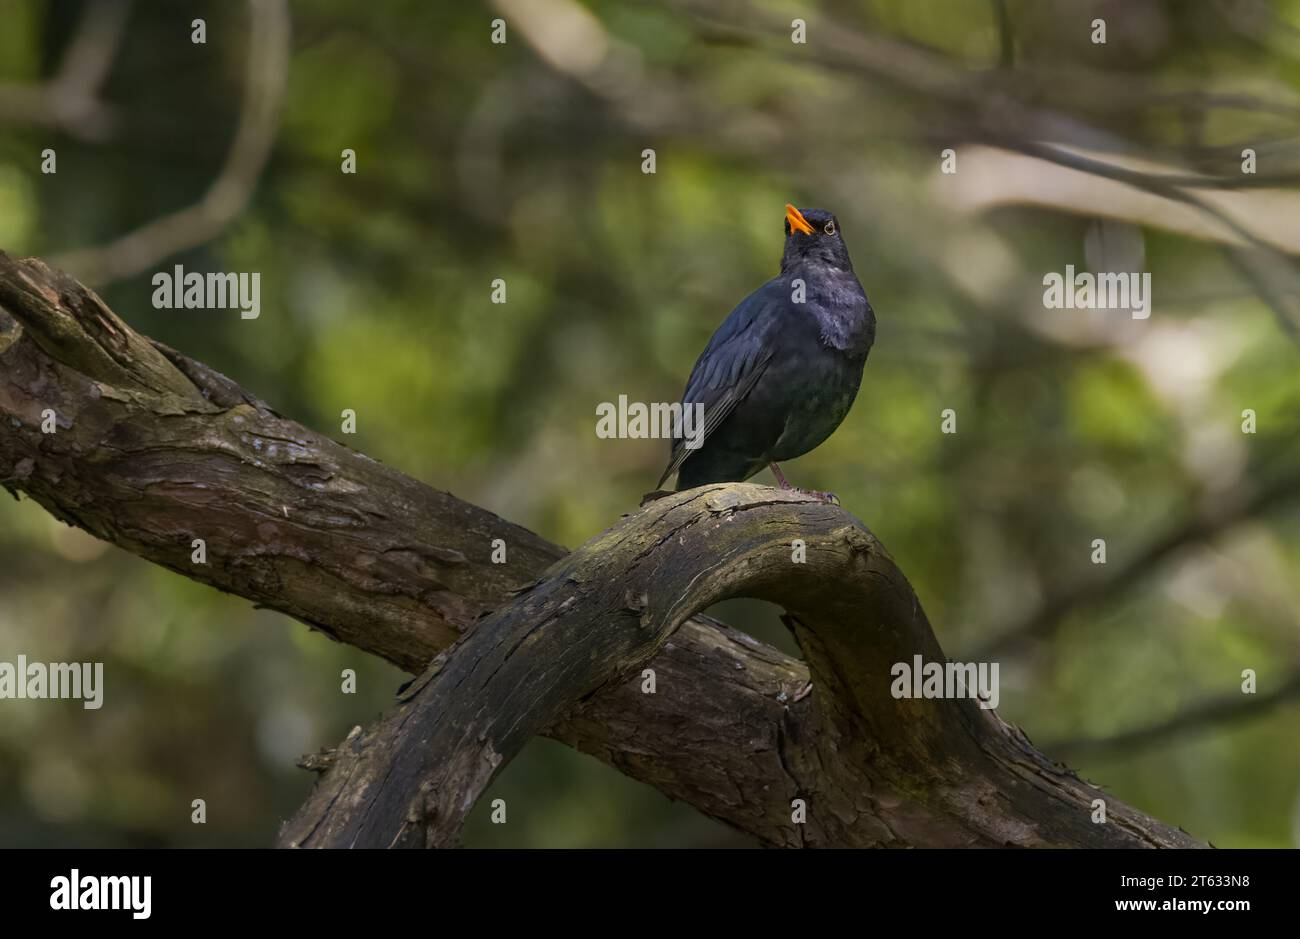 Oiseau noir commun (Turdus merula) mâle sur la branche regardant la caméra, voïvodie de Podlaskie. Pologne, Europe Banque D'Images